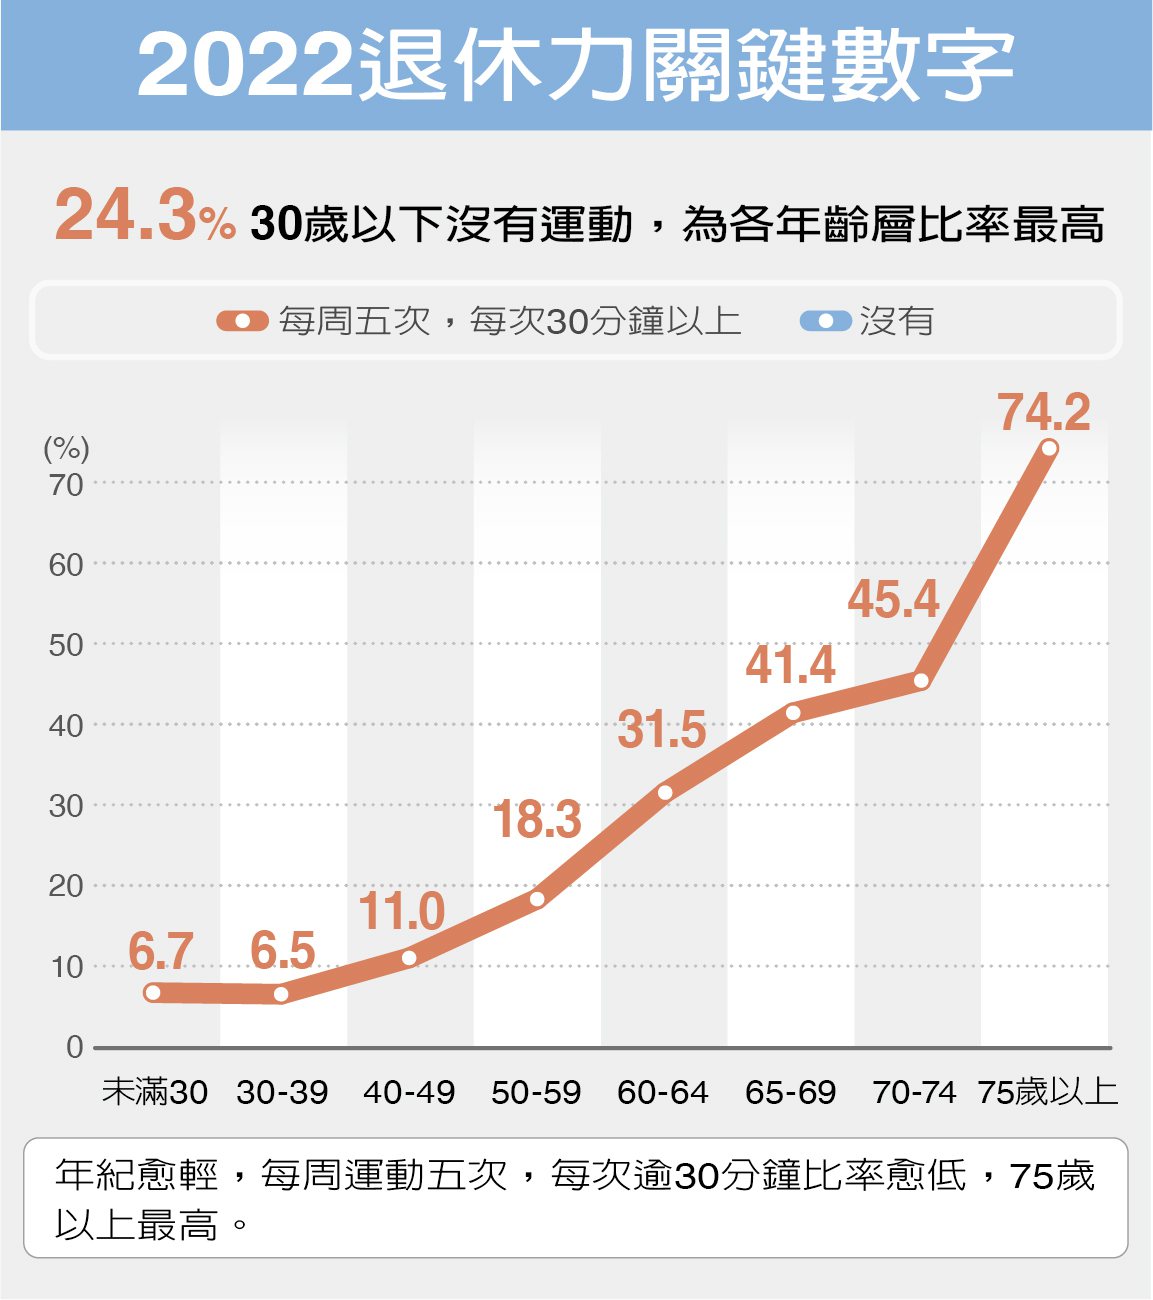 24.3%30歲以下沒有運動。<br />製表／林又旻、魏忻忻 資料來源／2022退休力大調查